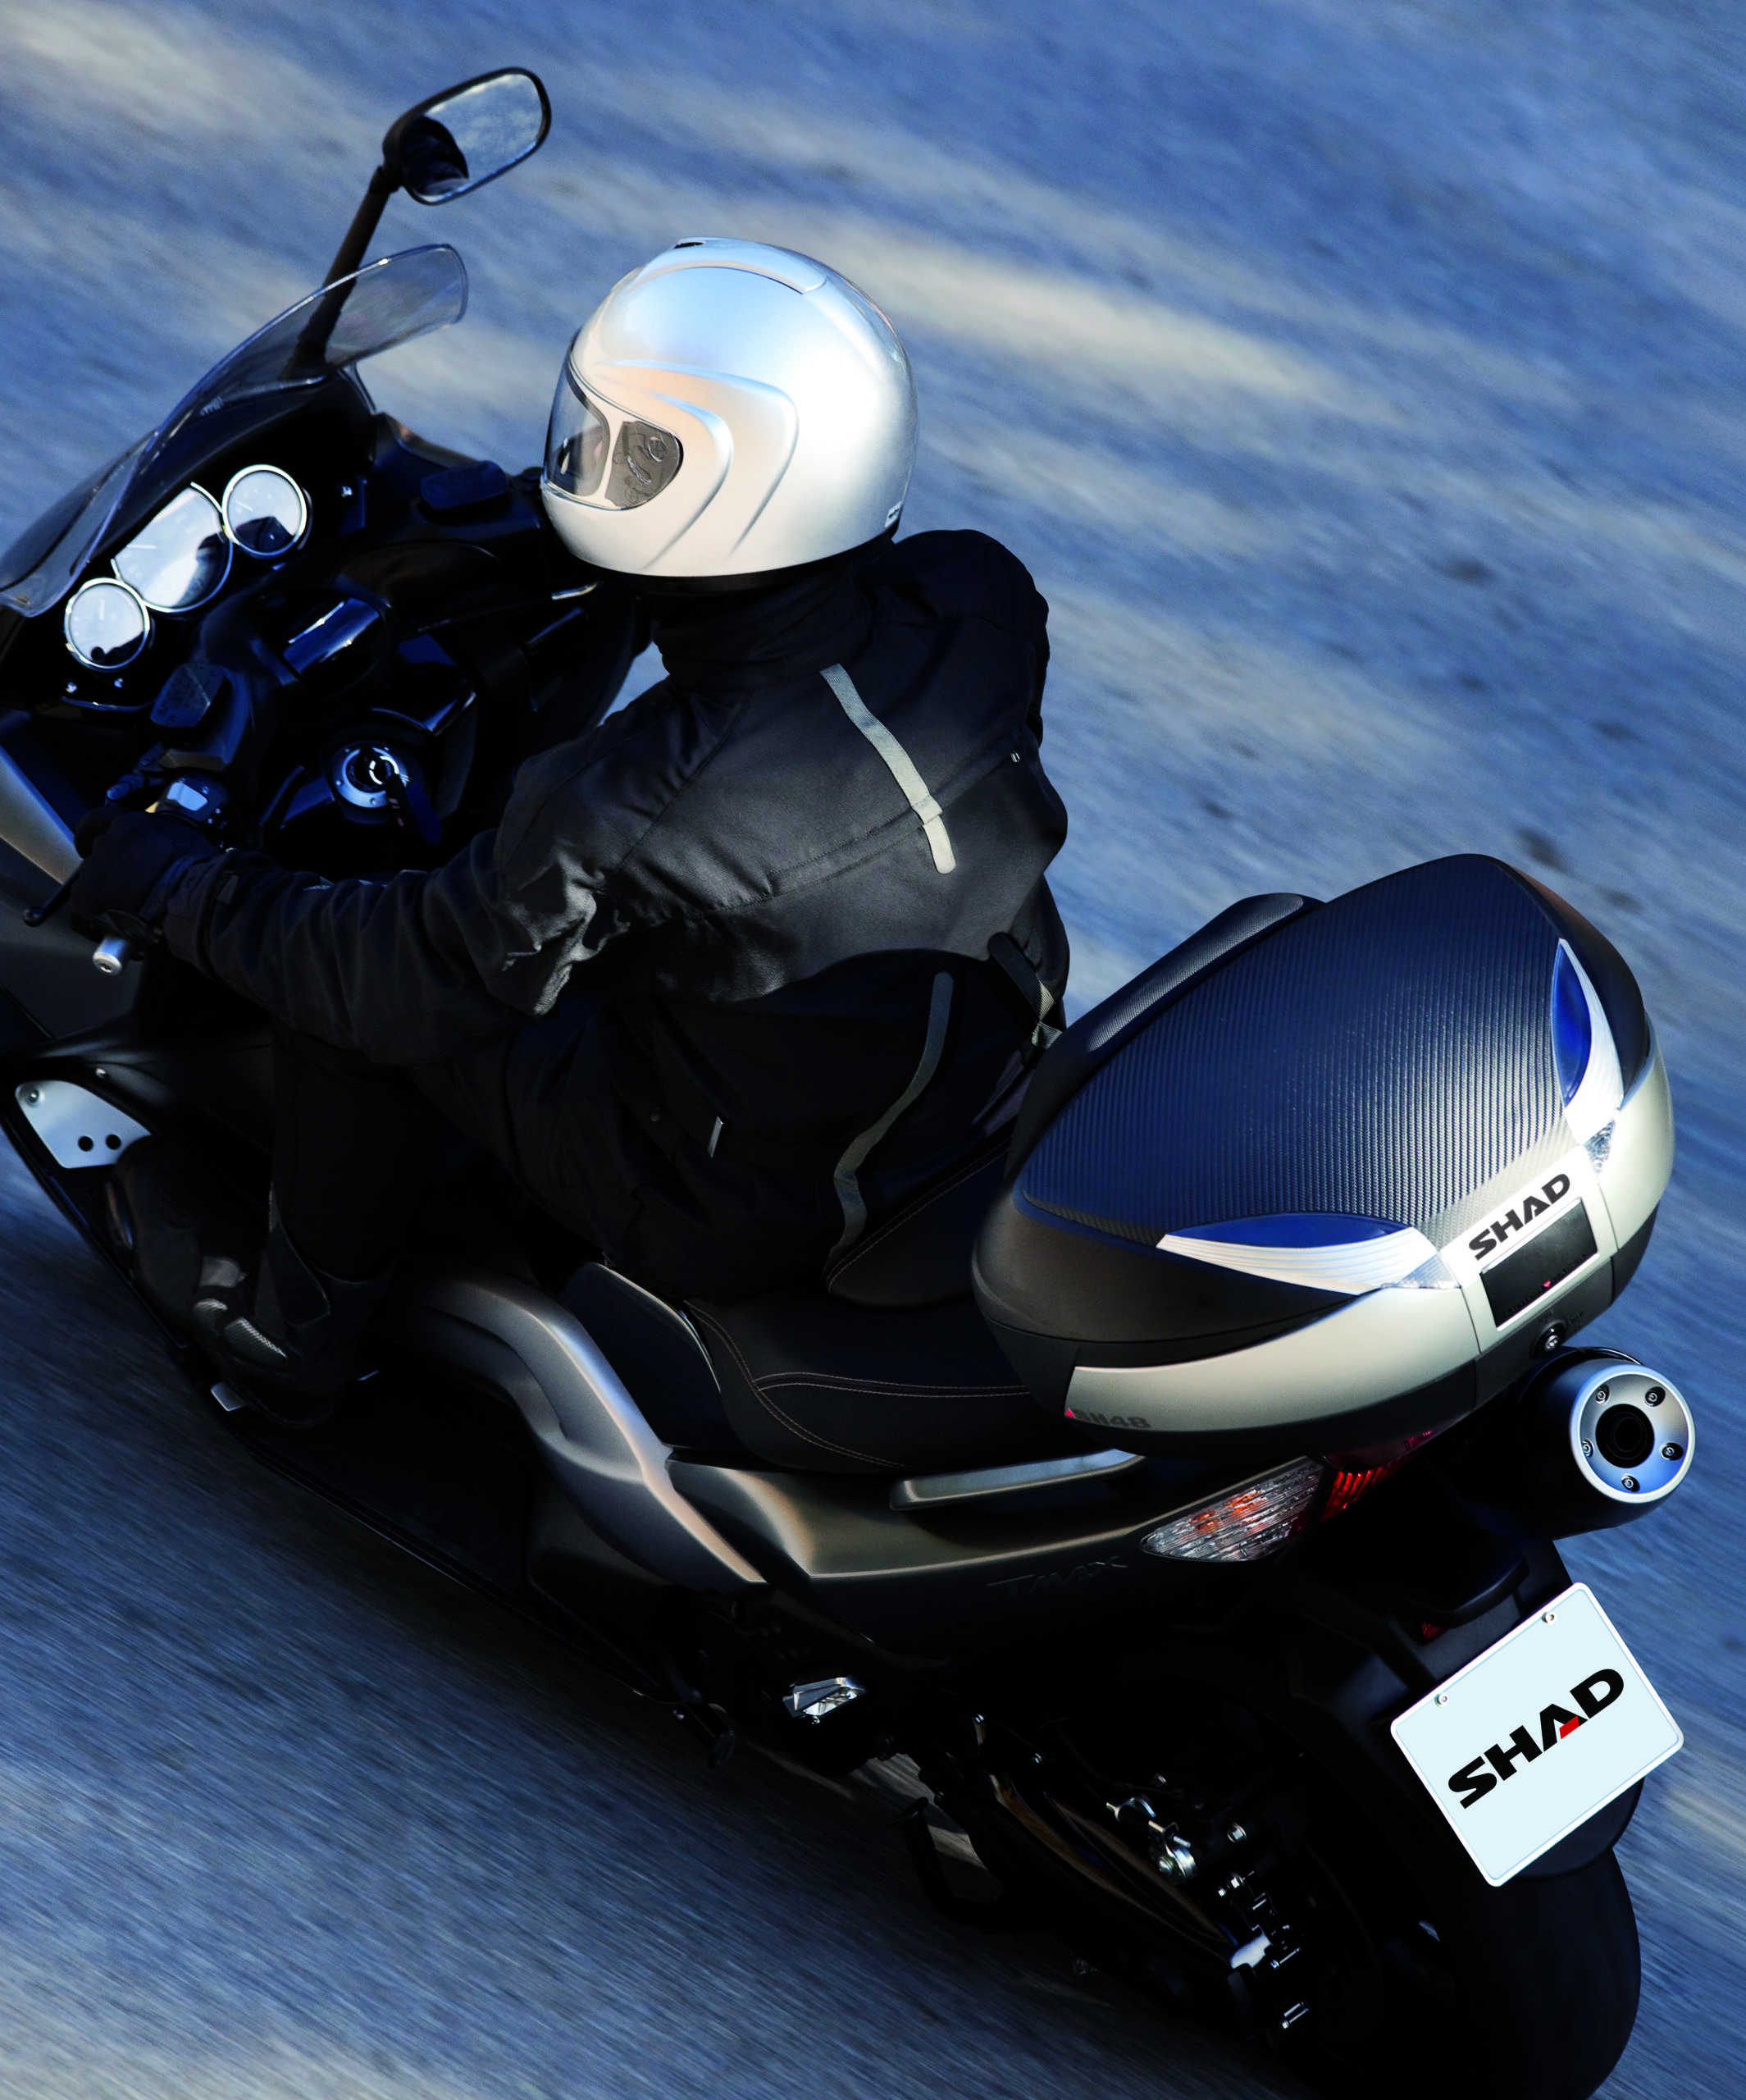 Baul Moto Shad SH48 Titanio Premium, D0B48400